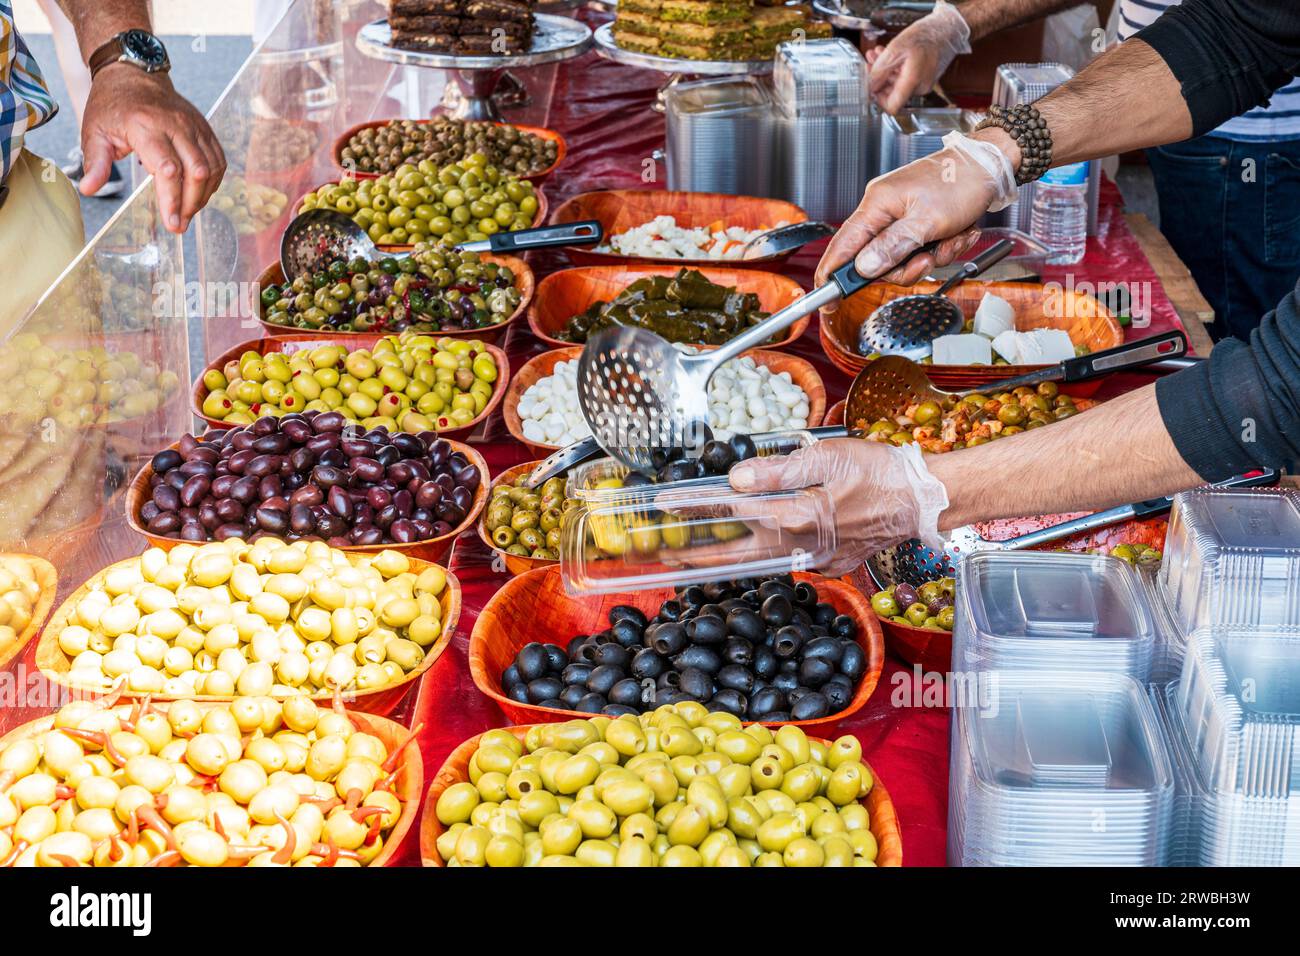 Primo piano di vari tipi di olive su una bancarella alimentare. Il braccio e le mani dell'uomo si avvicinano in avanti per raccogliere alcune olive in un contenitore di plastica da vendere. Foto Stock